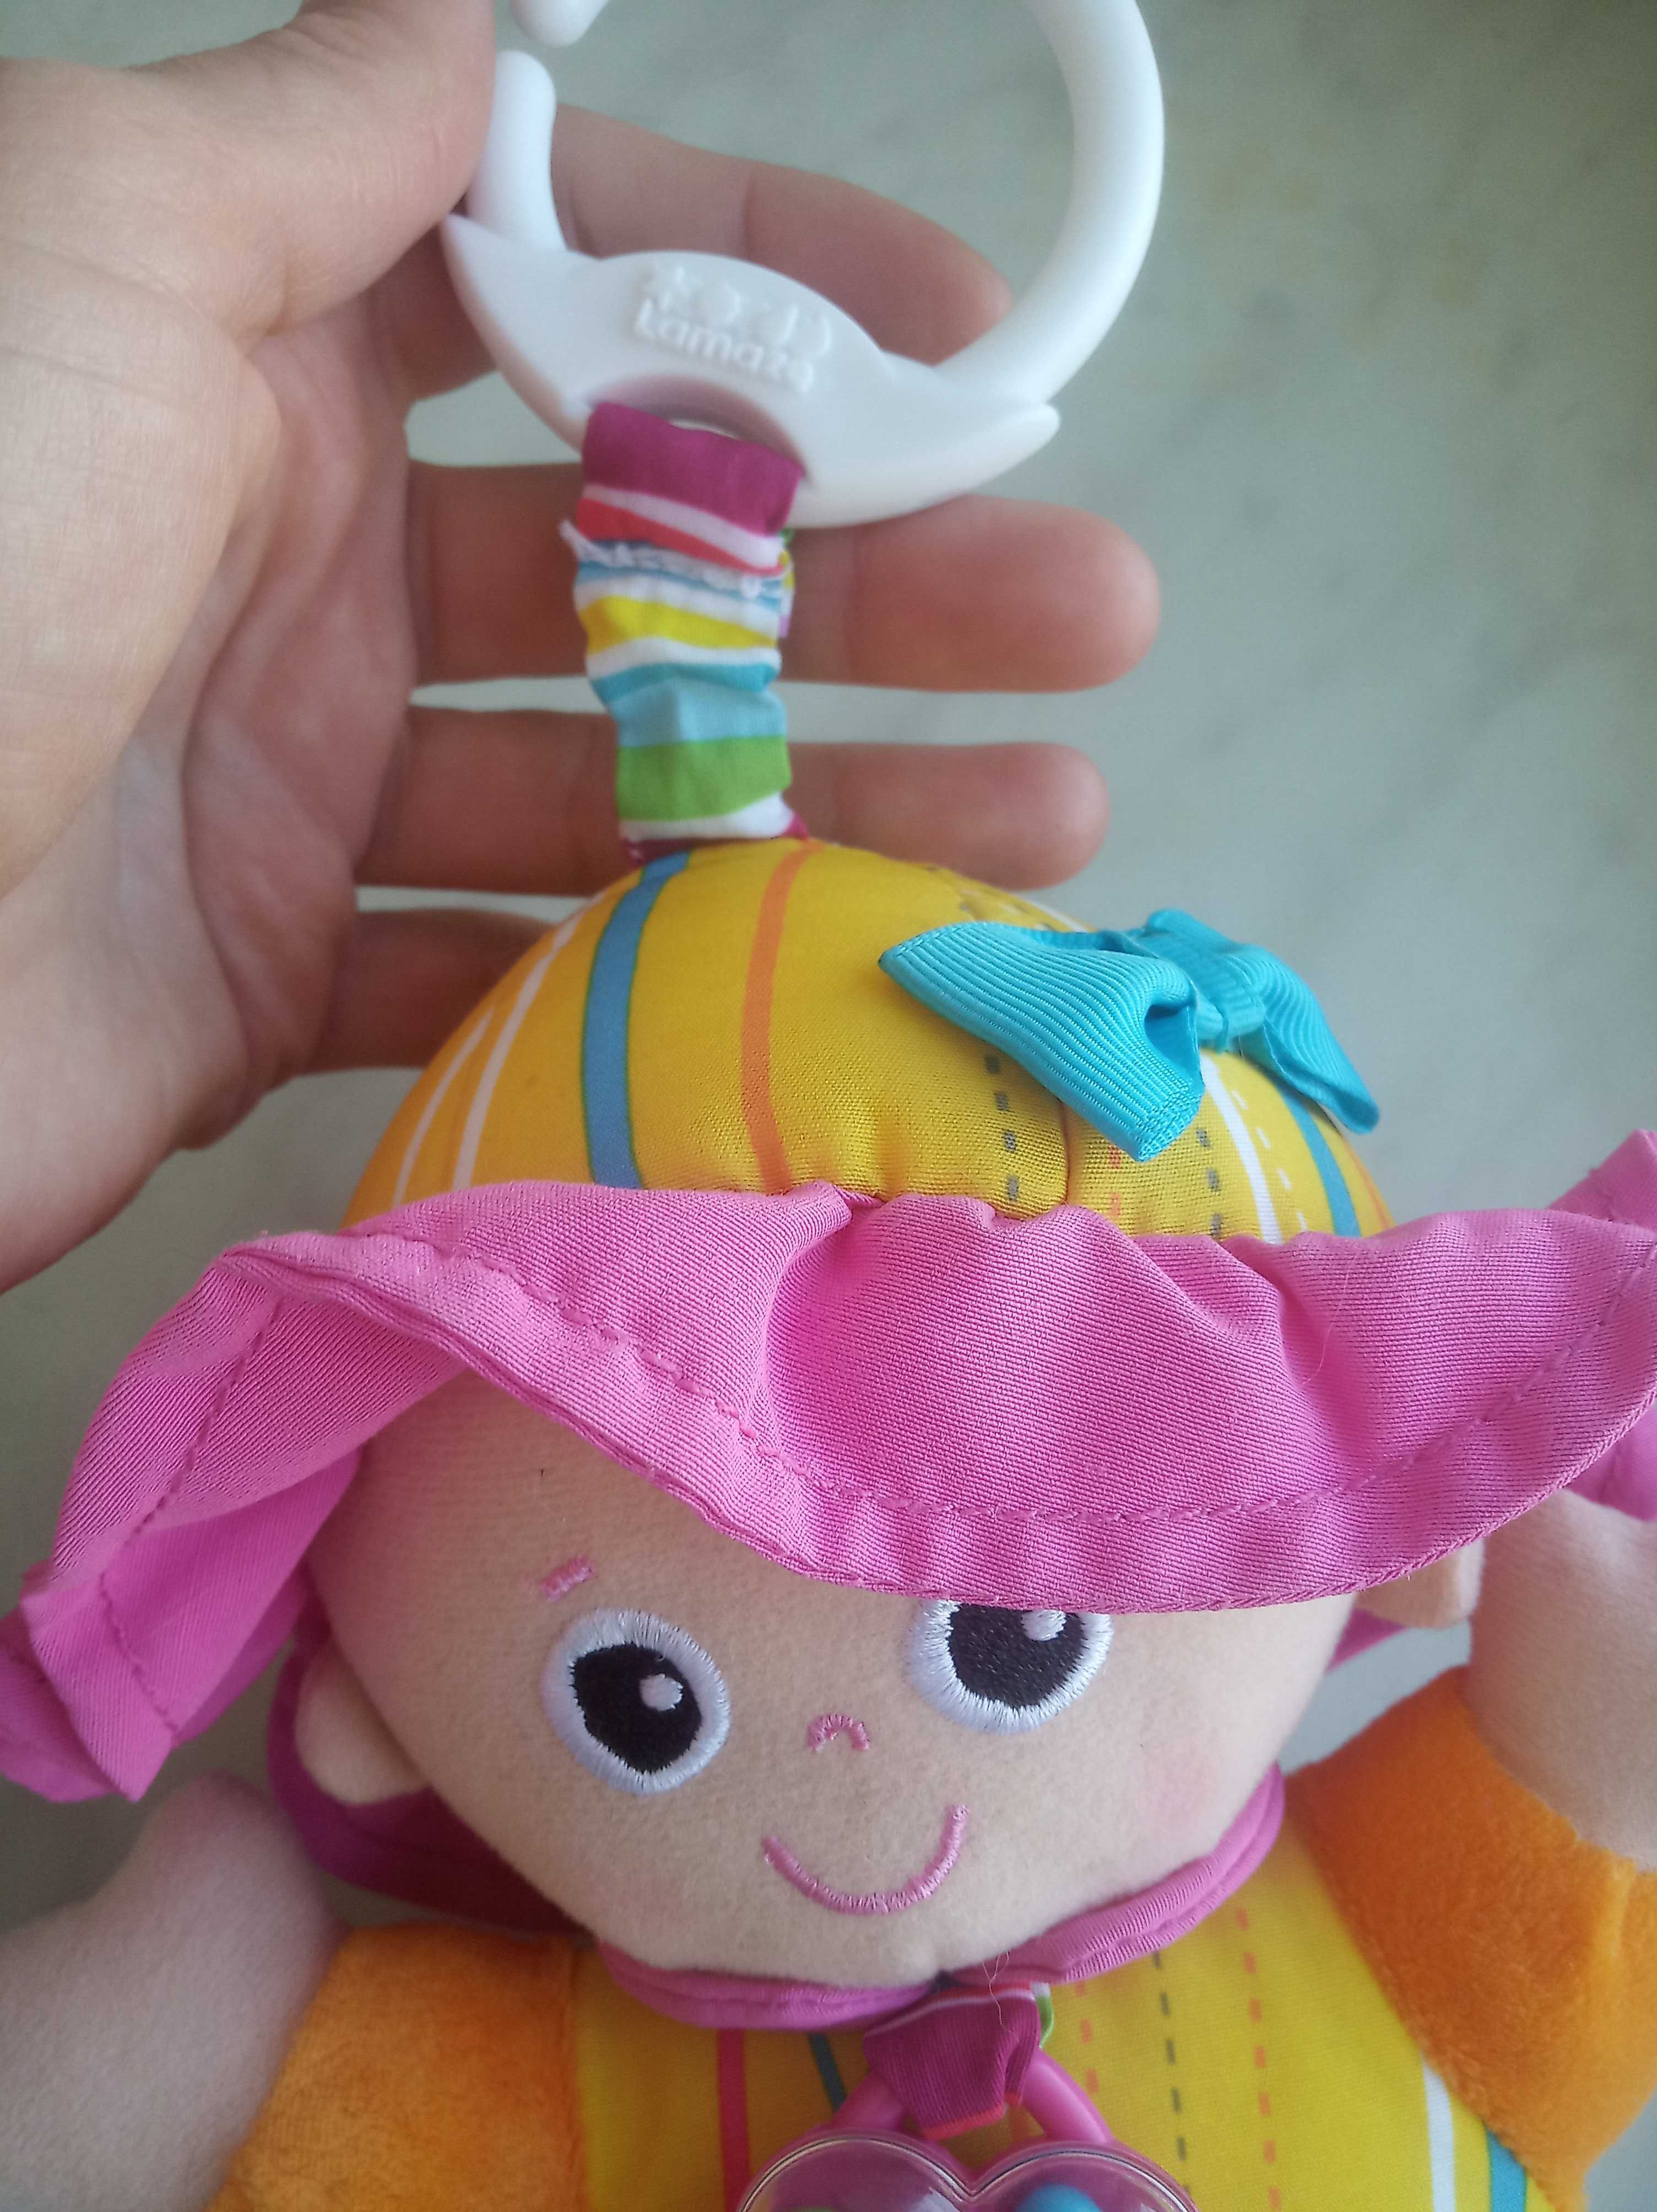 Мягкая игрушка-погремушка, подвеска Кукла Lamaze